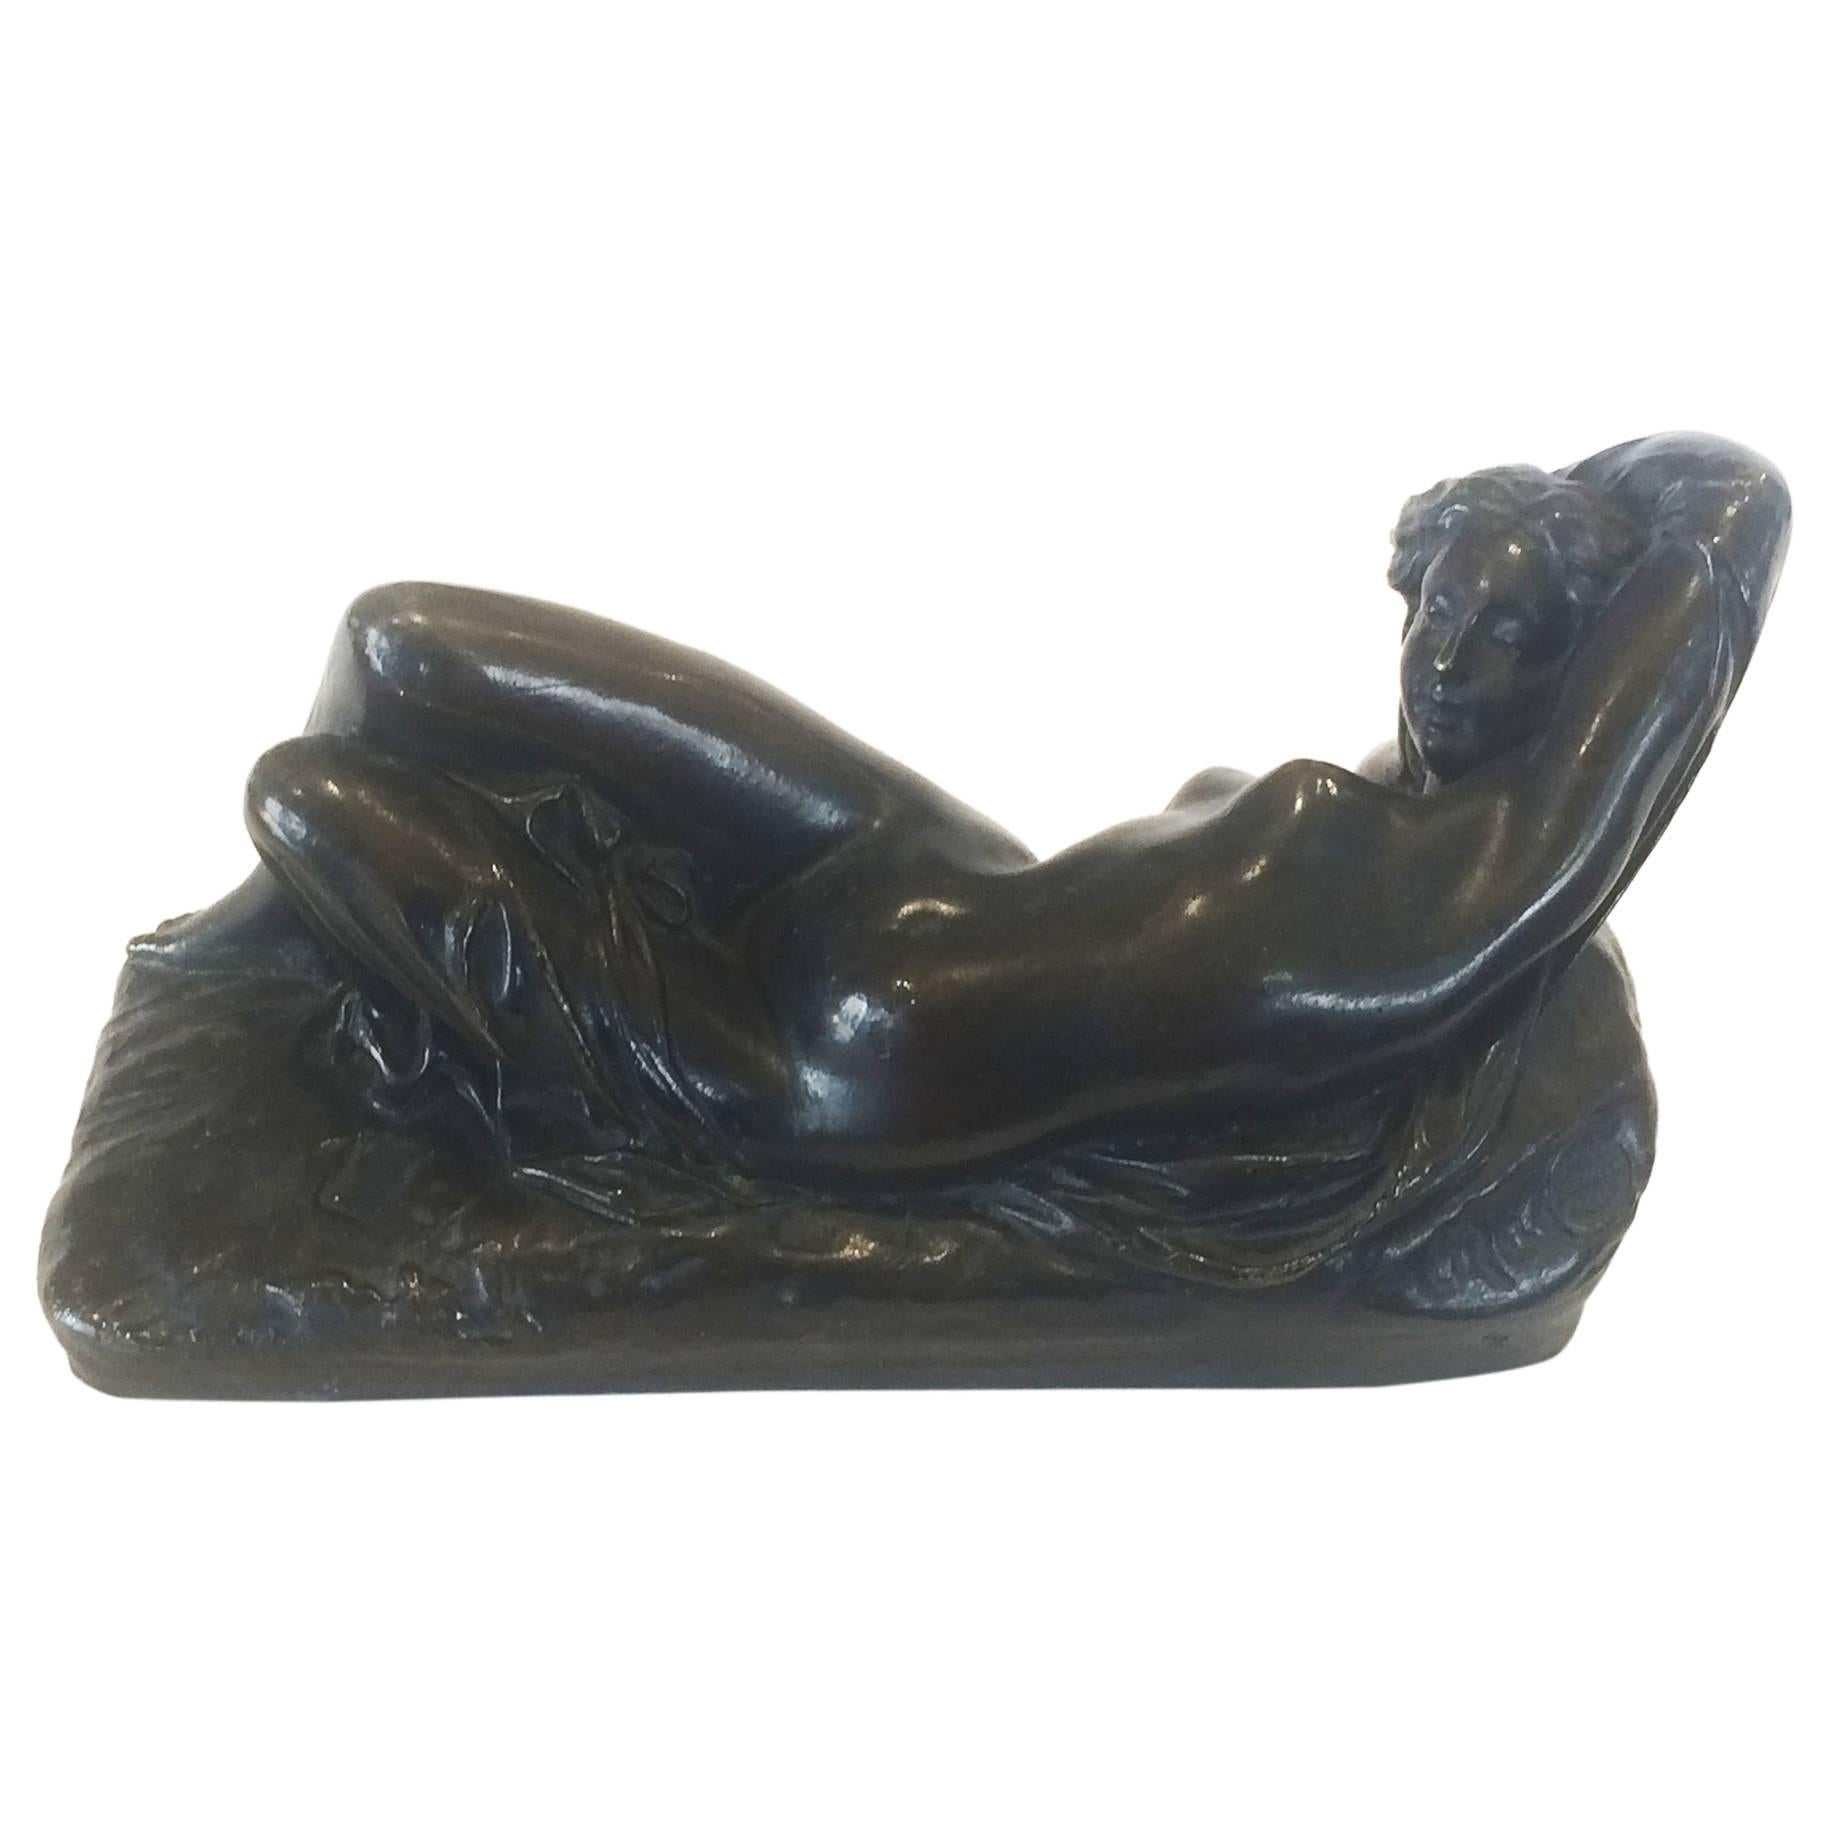 Art Deco Nude Bronze Reclining Figure "Lost Wax Method"